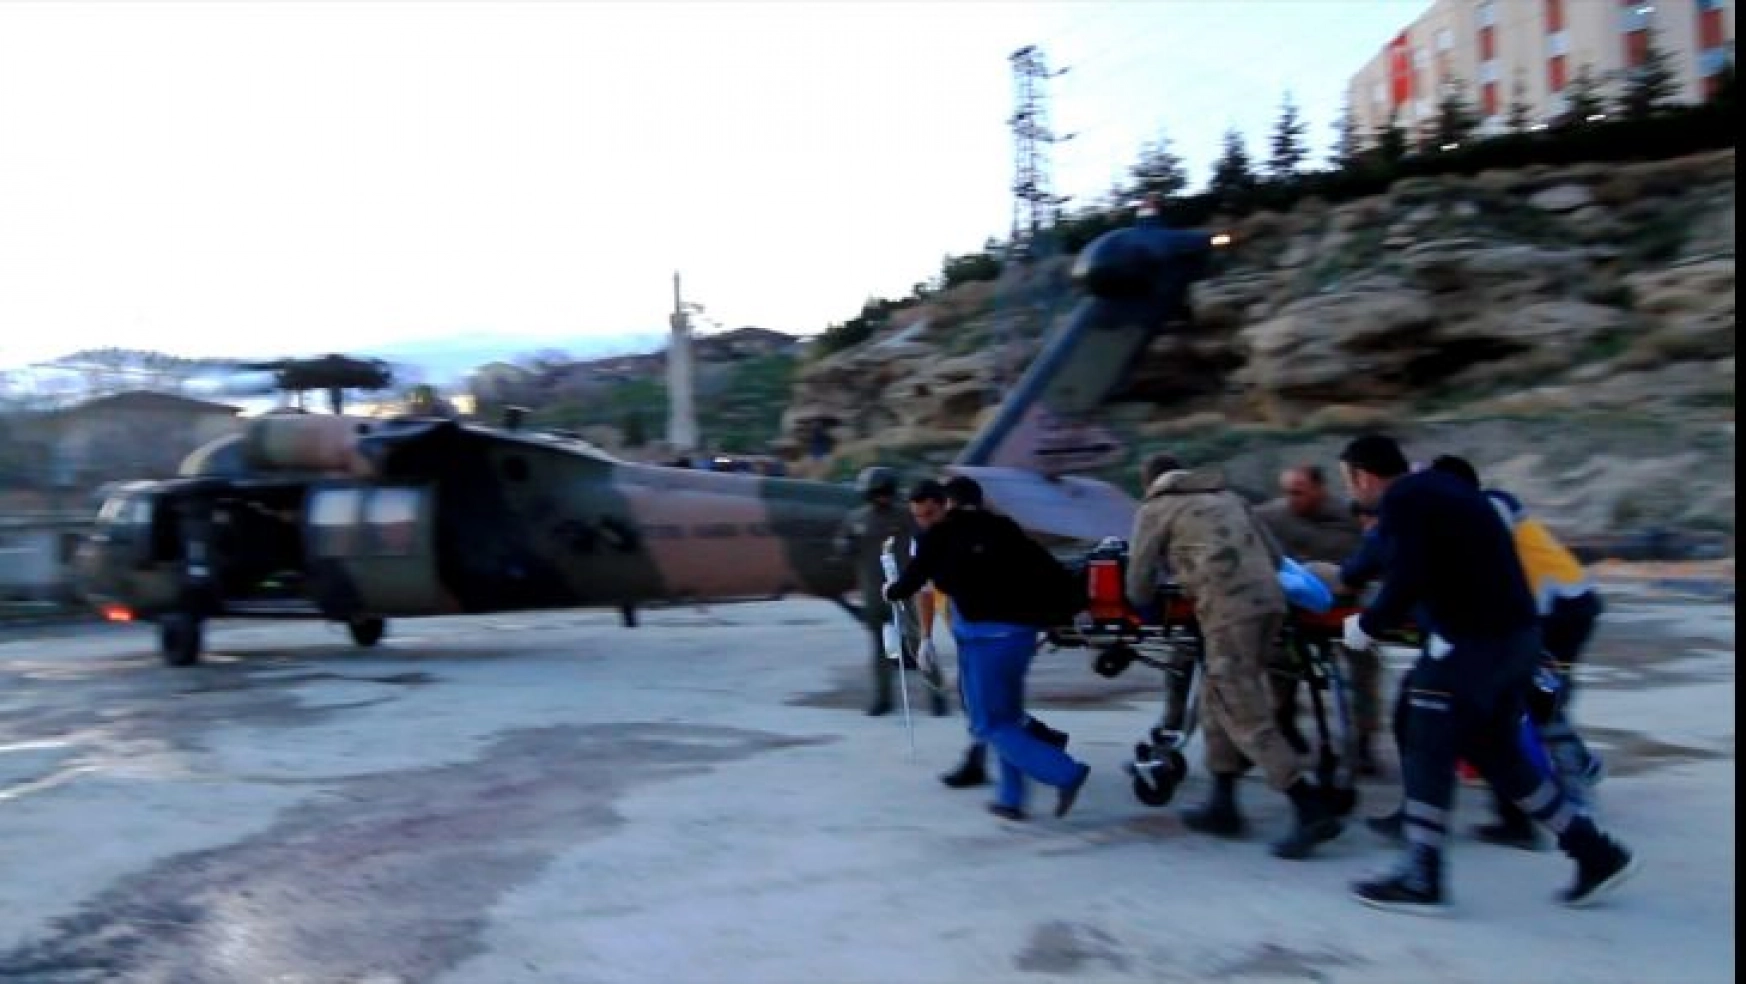 Askeri helikopter, silahla yaralanan çocuk için havalandı